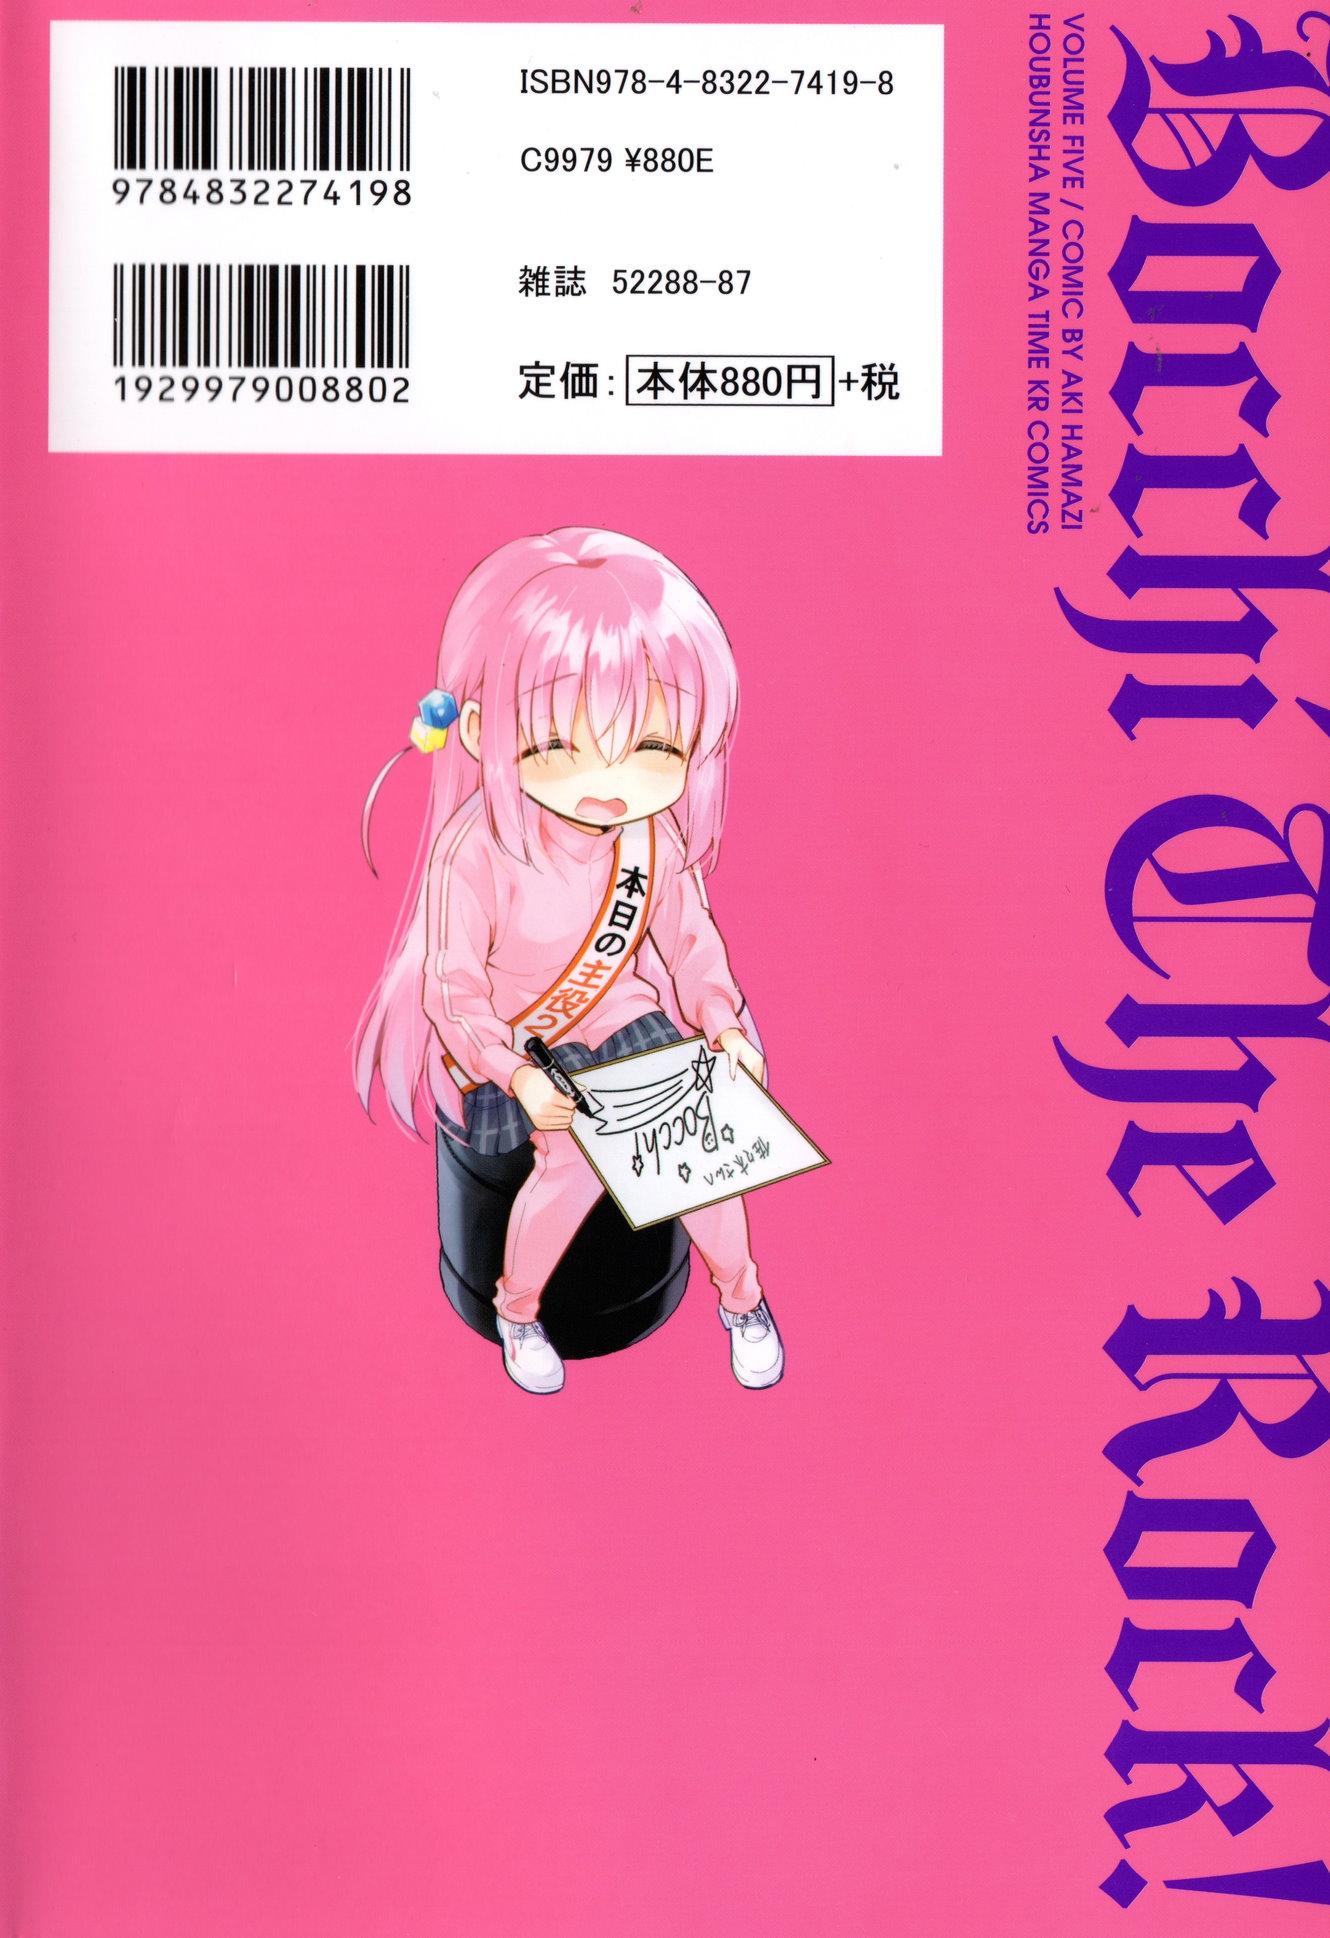 Bocchi the Rock! Vol. 5 - Tokyo Otaku Mode (TOM)